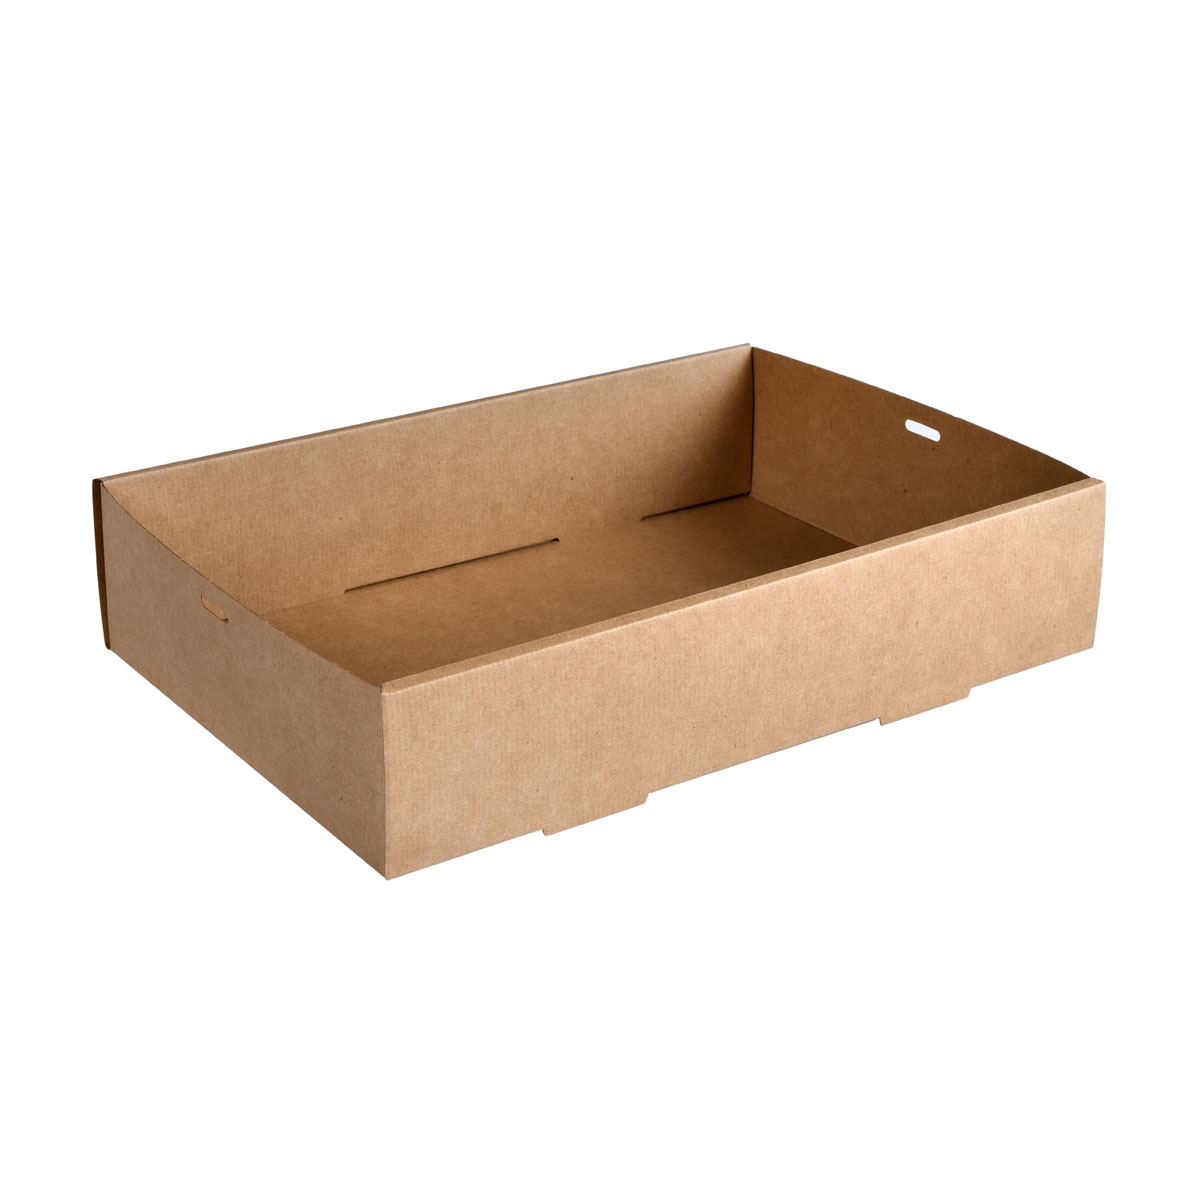 Catering-Tray Cardboard / PLA braun, Medium braun